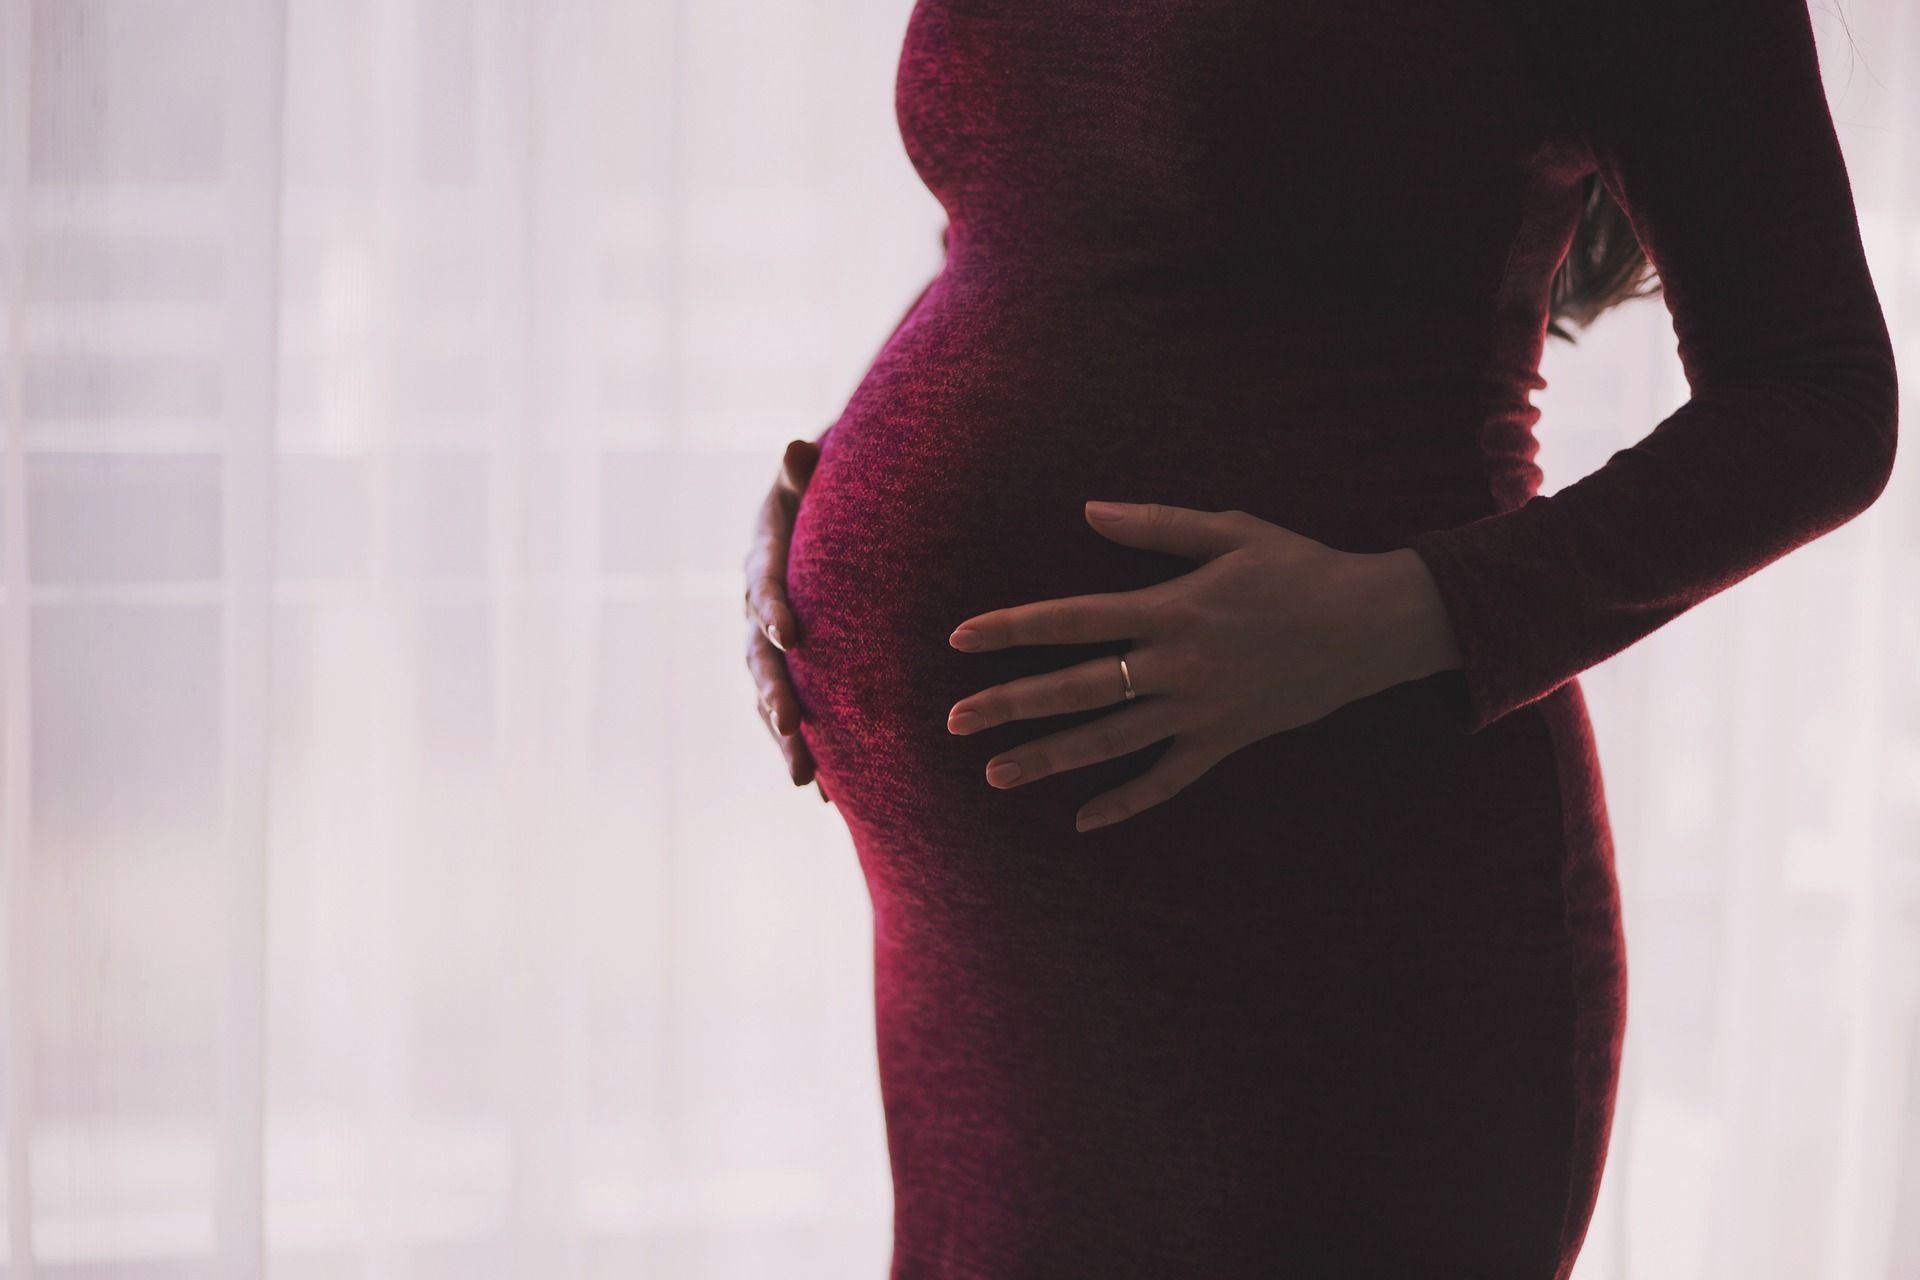 Αξιολόγηση των καλύτερων κλινικών εξωσωματικής γονιμοποίησης στο Κρασνογιάρσκ το 2020 με θετικές κριτικές και αποτελέσματα